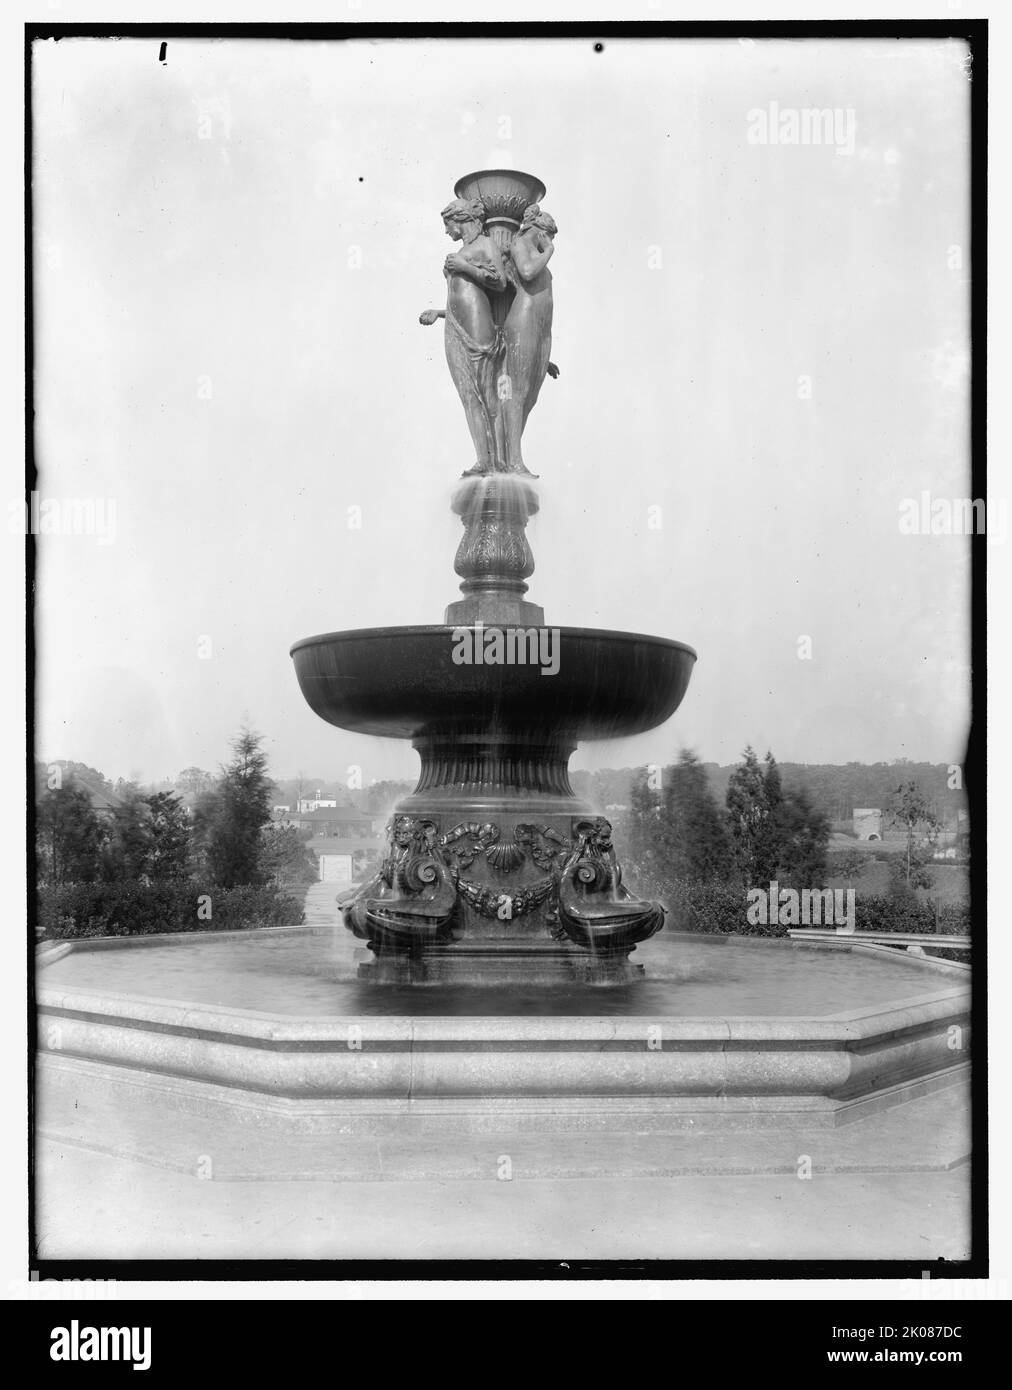 MacMillen [sic] fontana, tra il 1910 e il 1920. La fontana McMillan a Washington, D.C., progettata da Herbert Adams, è stata dedicata nell'ottobre 1919. Si compone di un gruppo scultoreo delle tre grazie, ed è stato gettato da opere di bronzo romano. Foto Stock